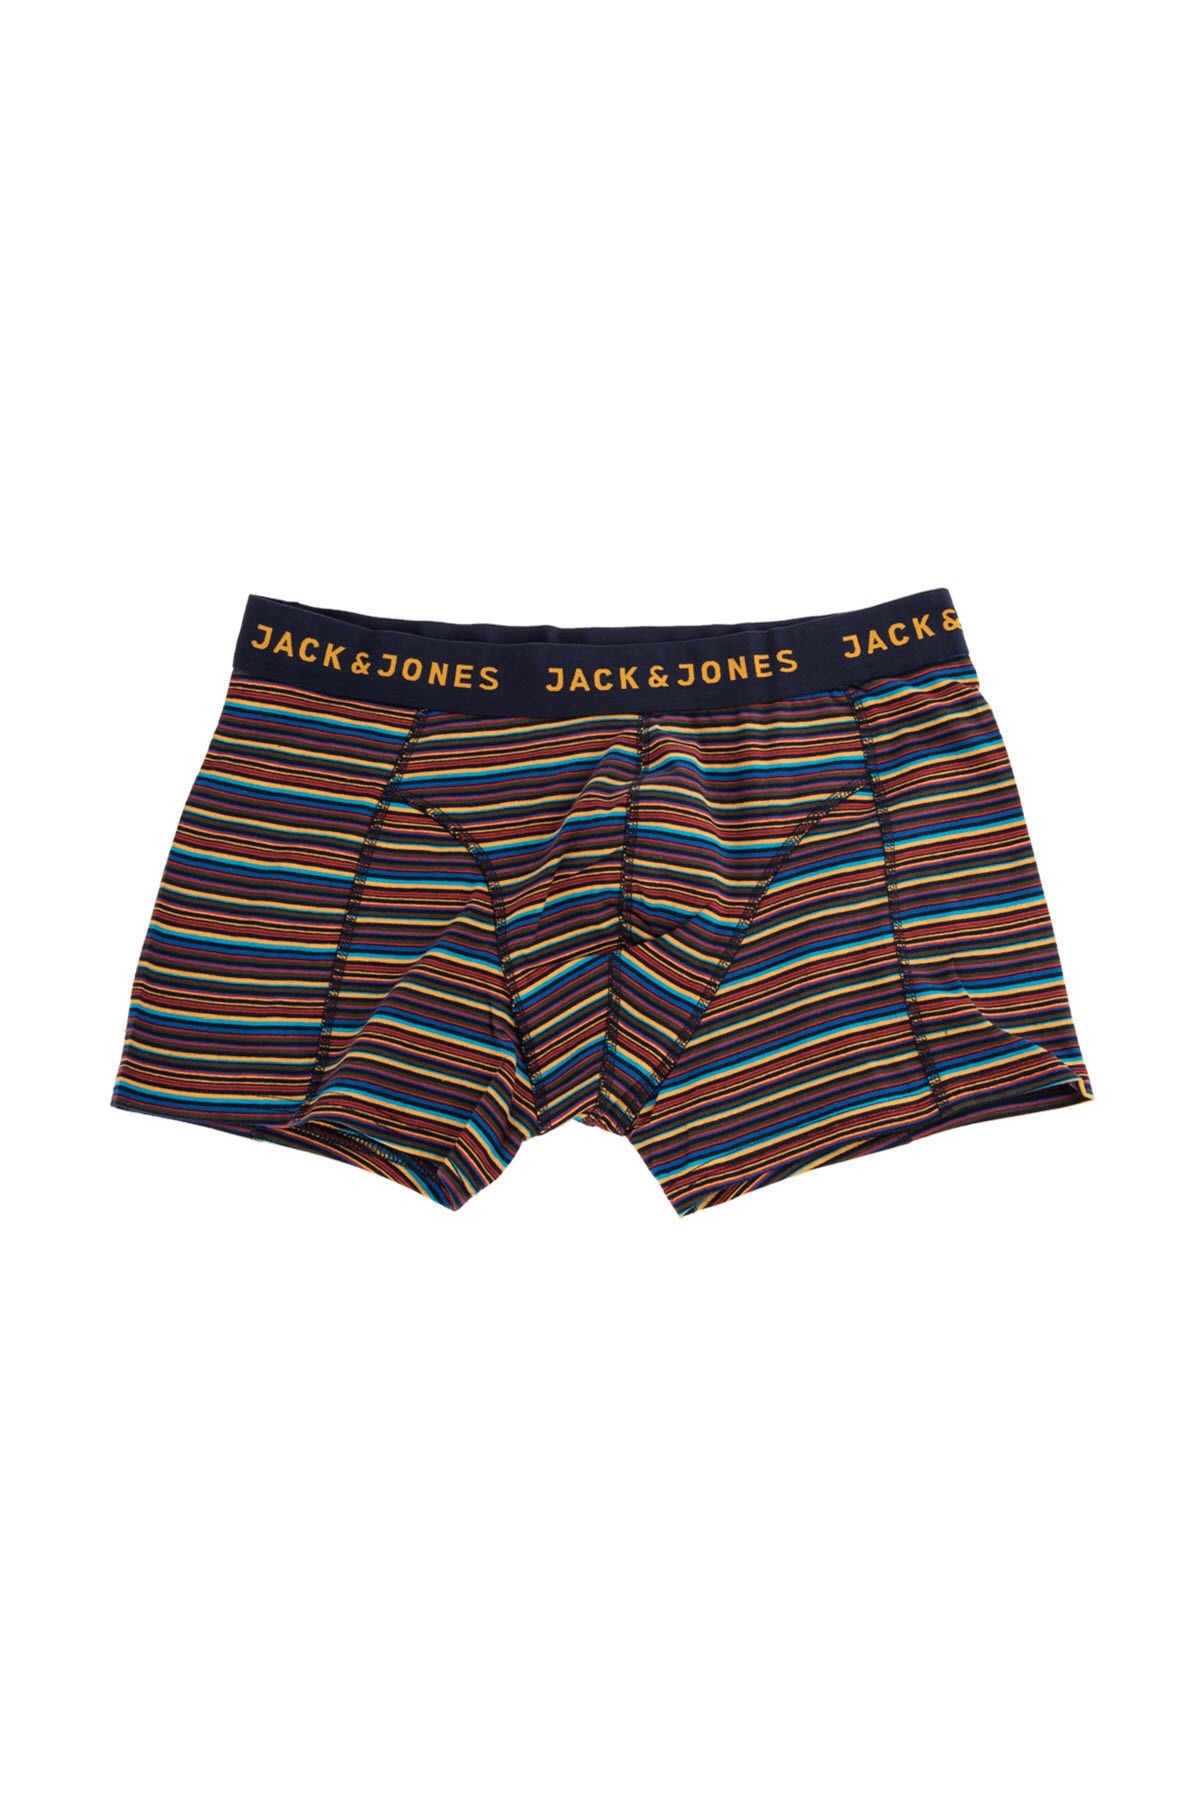 Jack & Jones Boxer - Colorfull Small Stripe Trunks 12142423